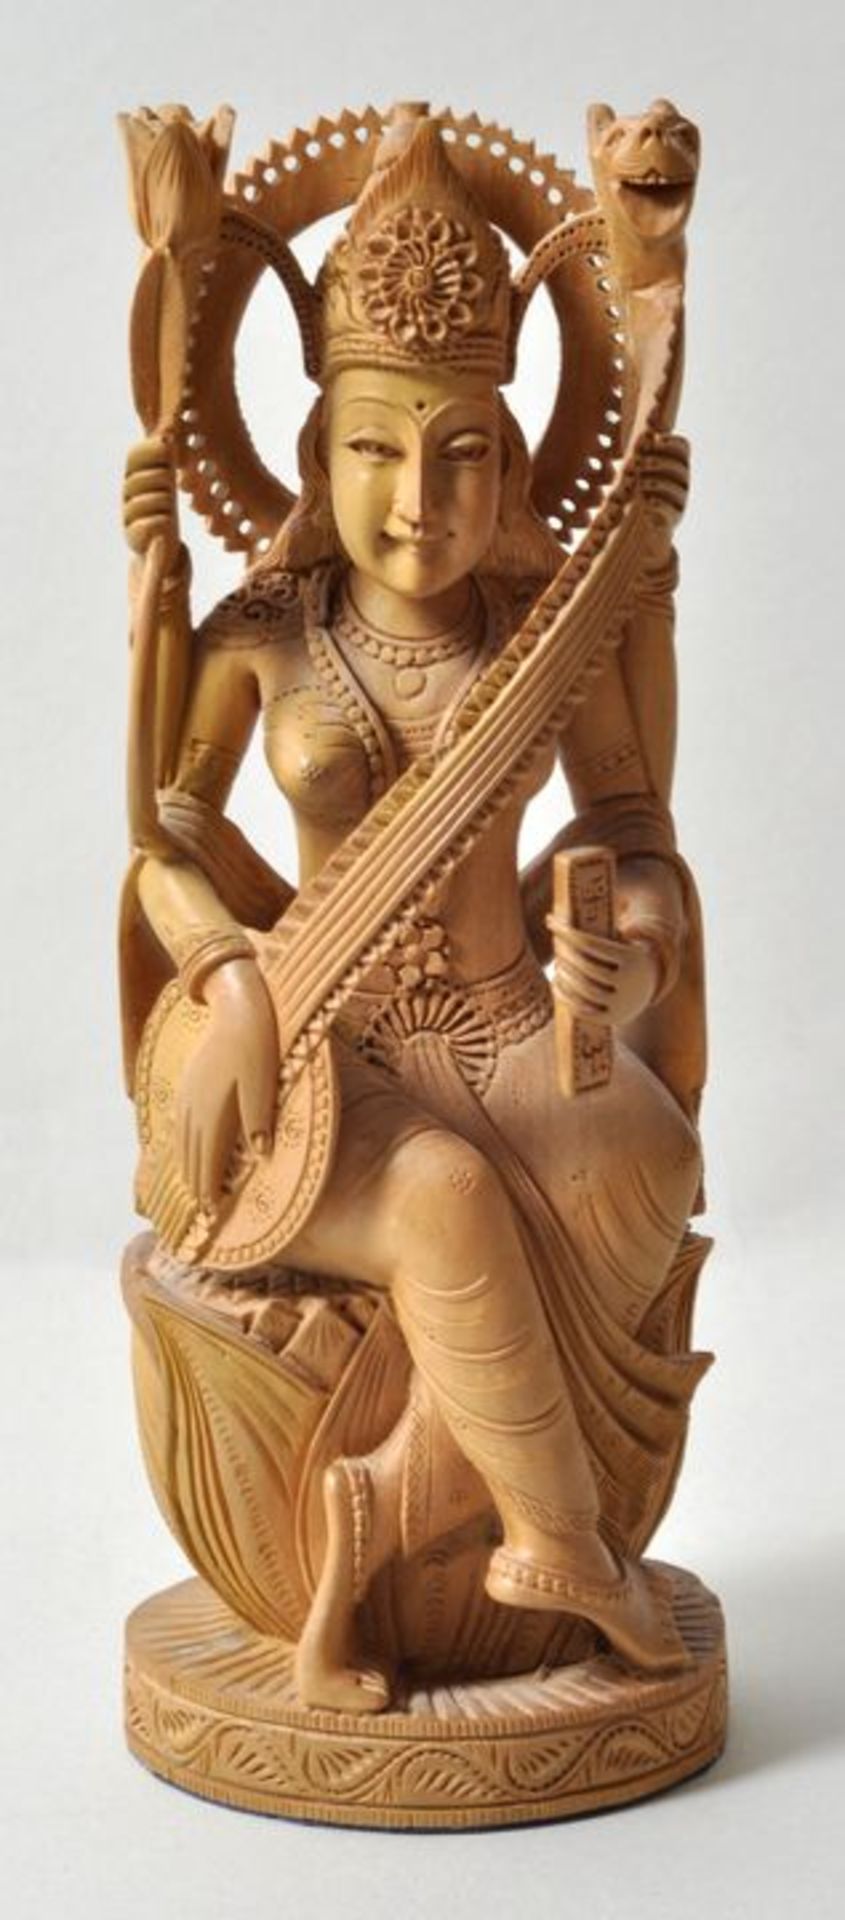 Indien. Sarasvati.Sandelholz, geschnitzt. Aufwenig gearbeitete Figur der hinduistischen Gottheit